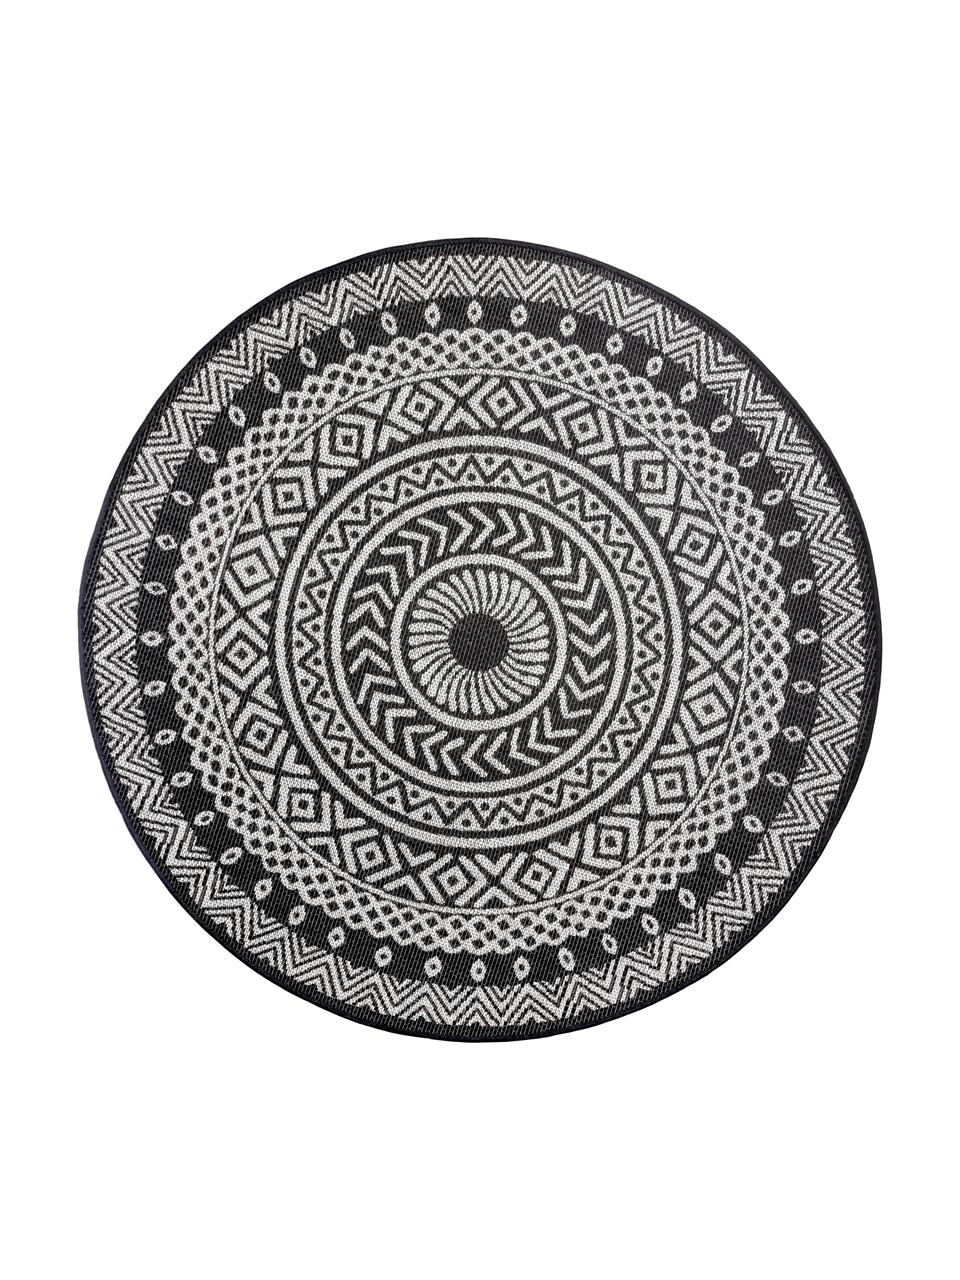 Rond in- en outdoor vloerkleed met patroon Jaffa in zwart, 100% polypropyleen, Zwart, crèmekleurig, Ø 160 cm (maat L)